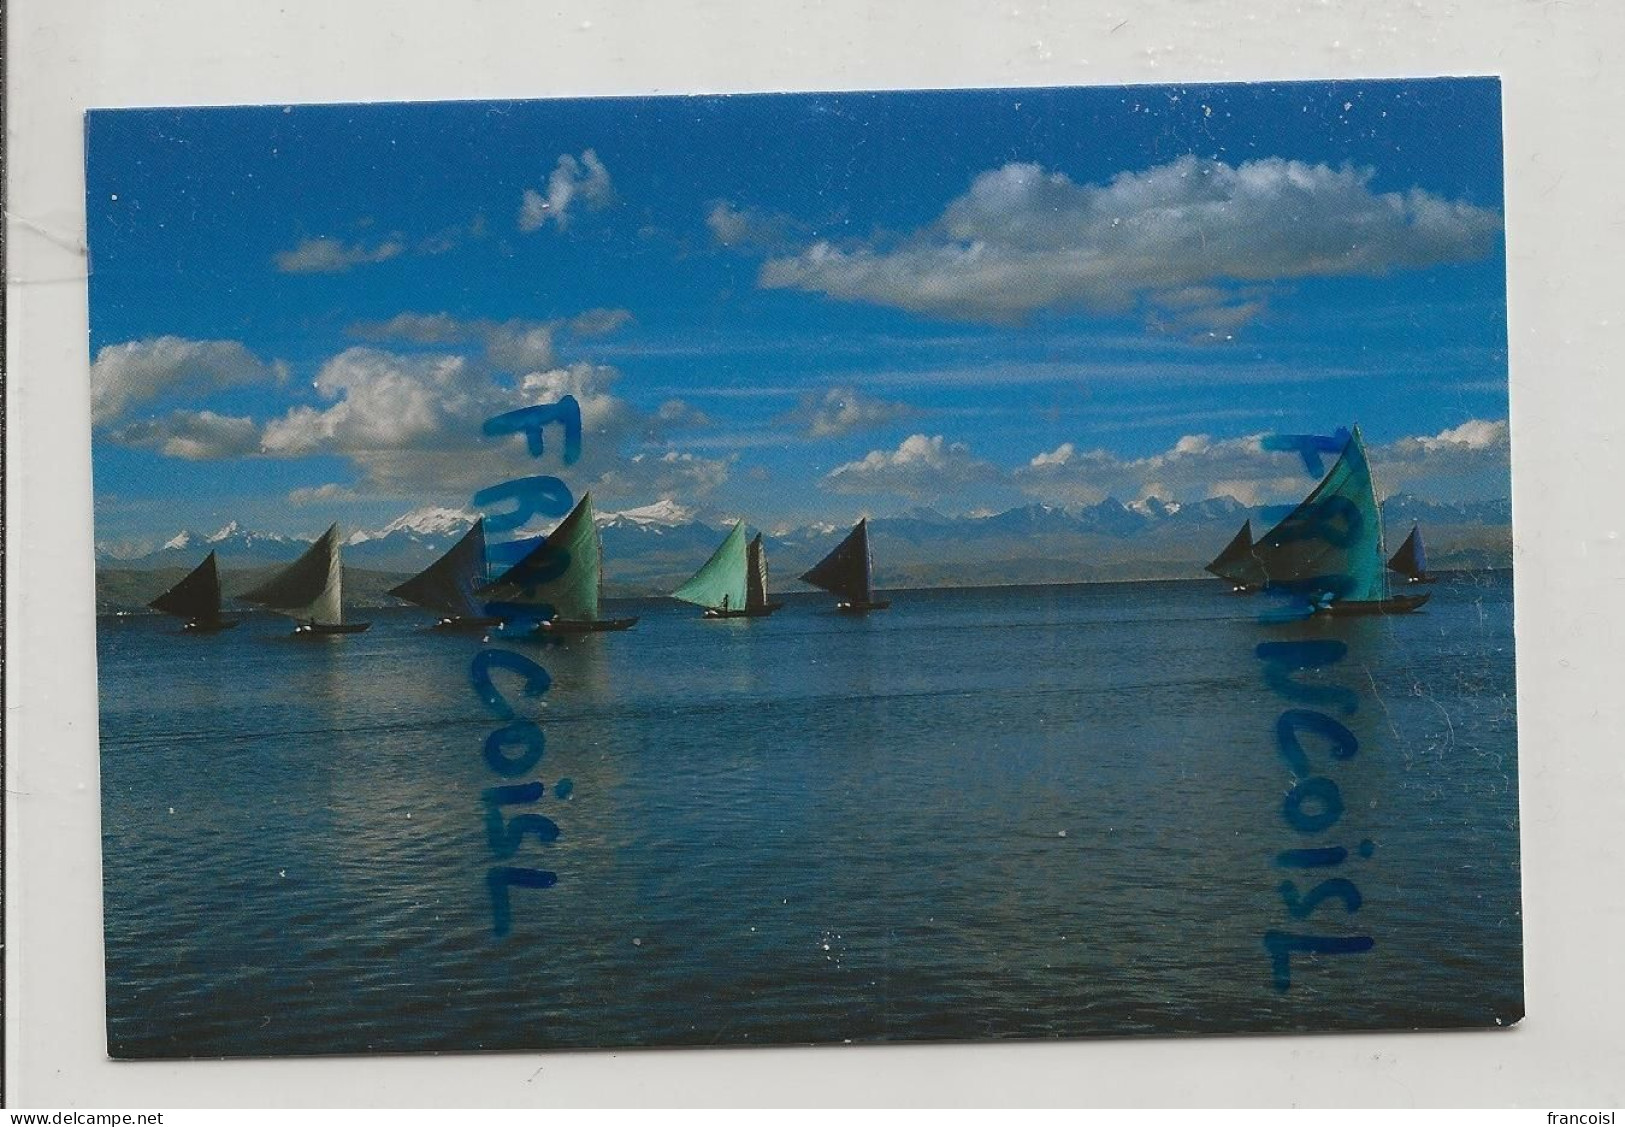 Le Vent En Poupe. Barques à Voile En Bolivie. - Bolivia